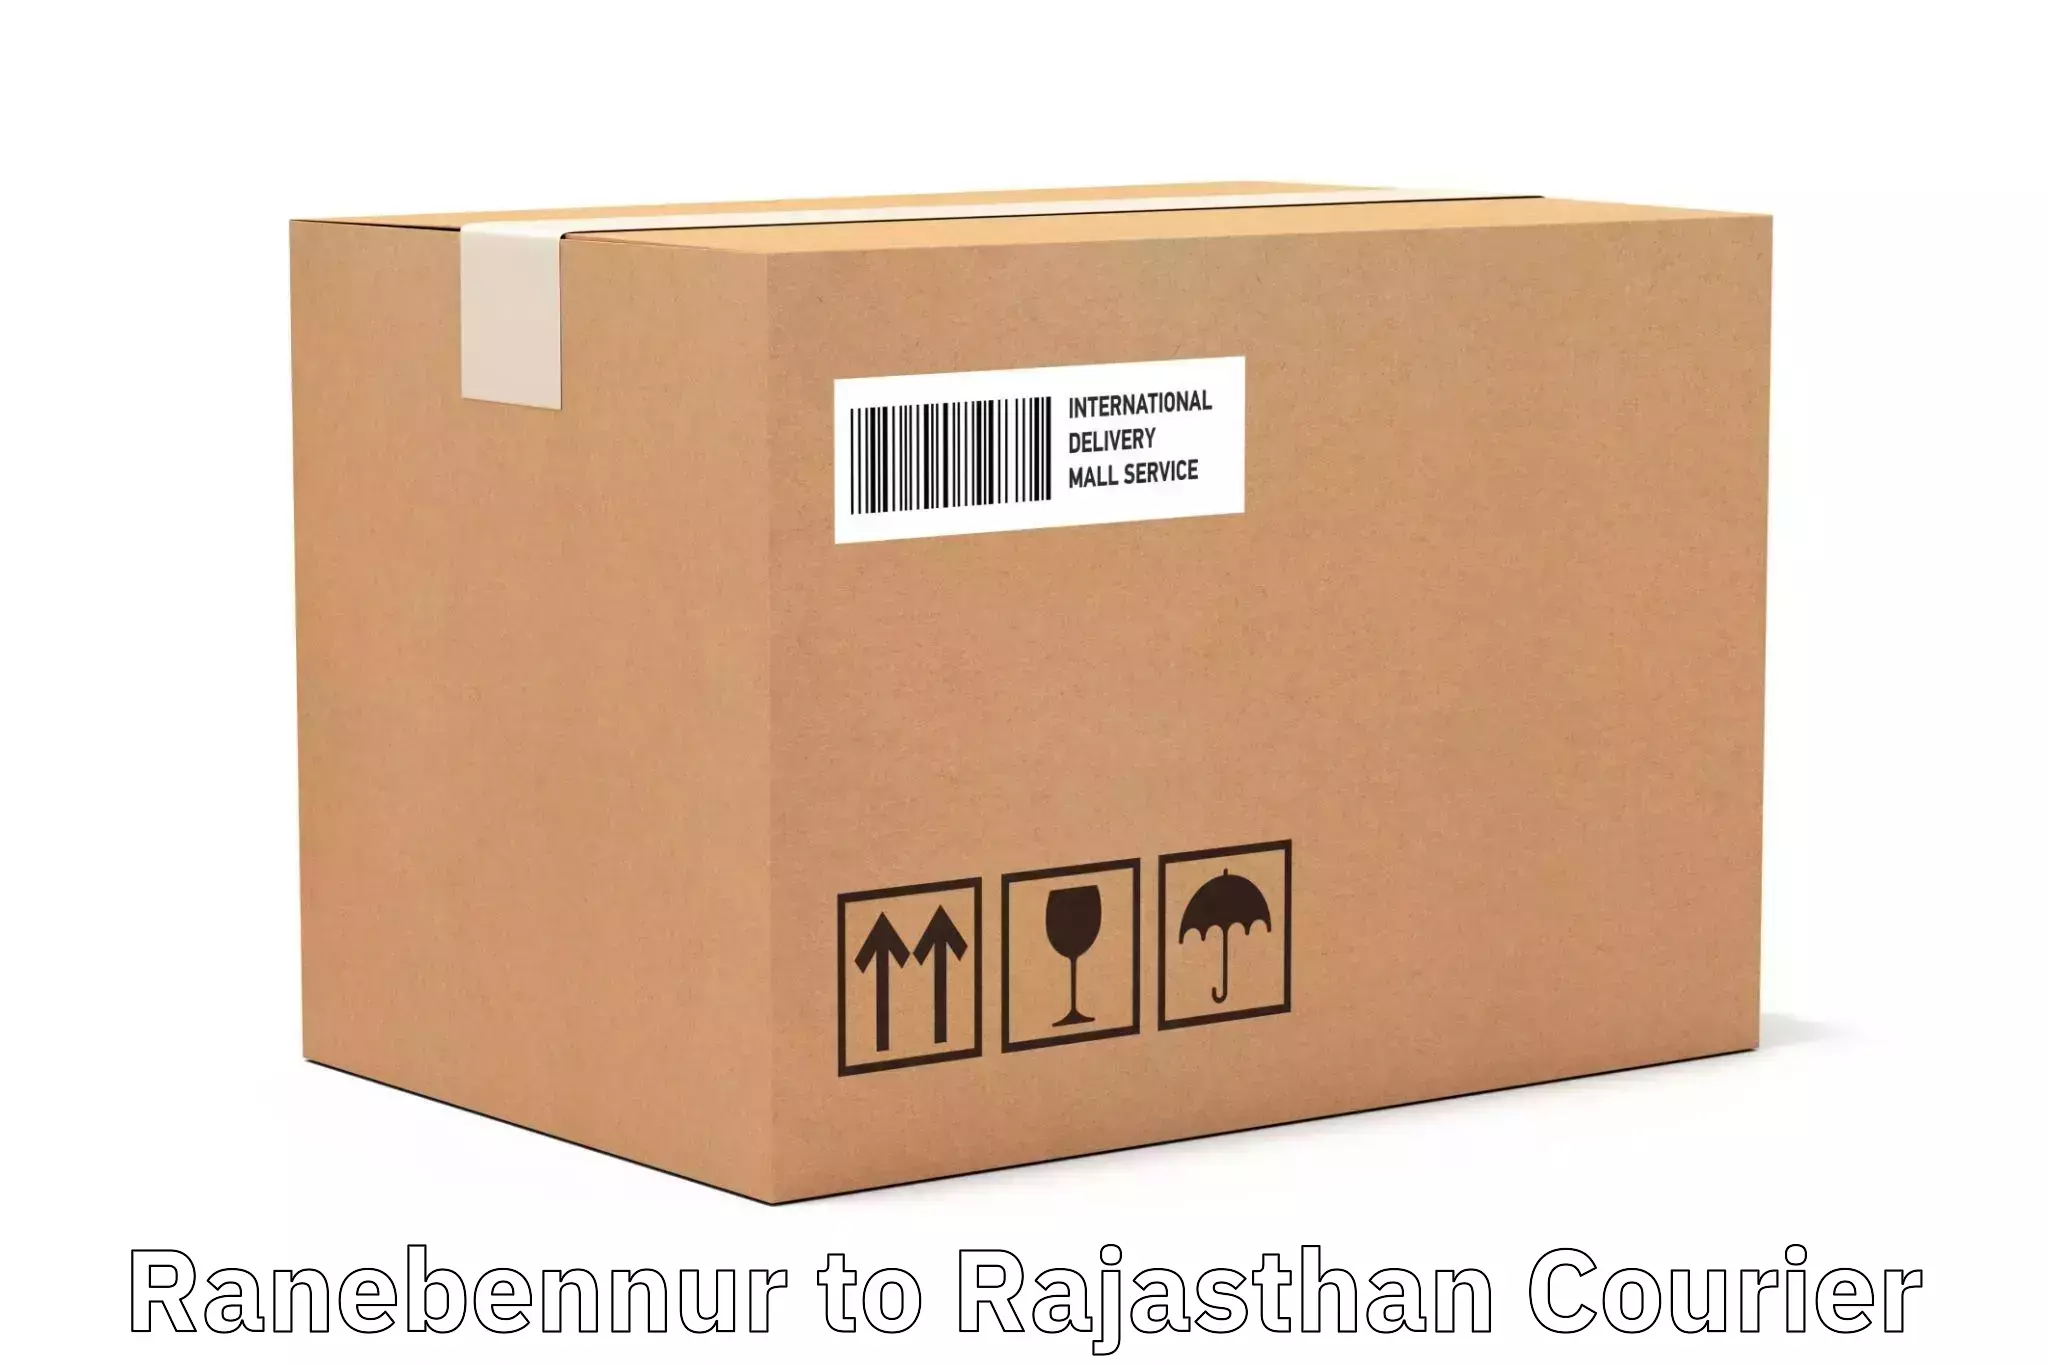 Next-generation courier services Ranebennur to Suratgarh